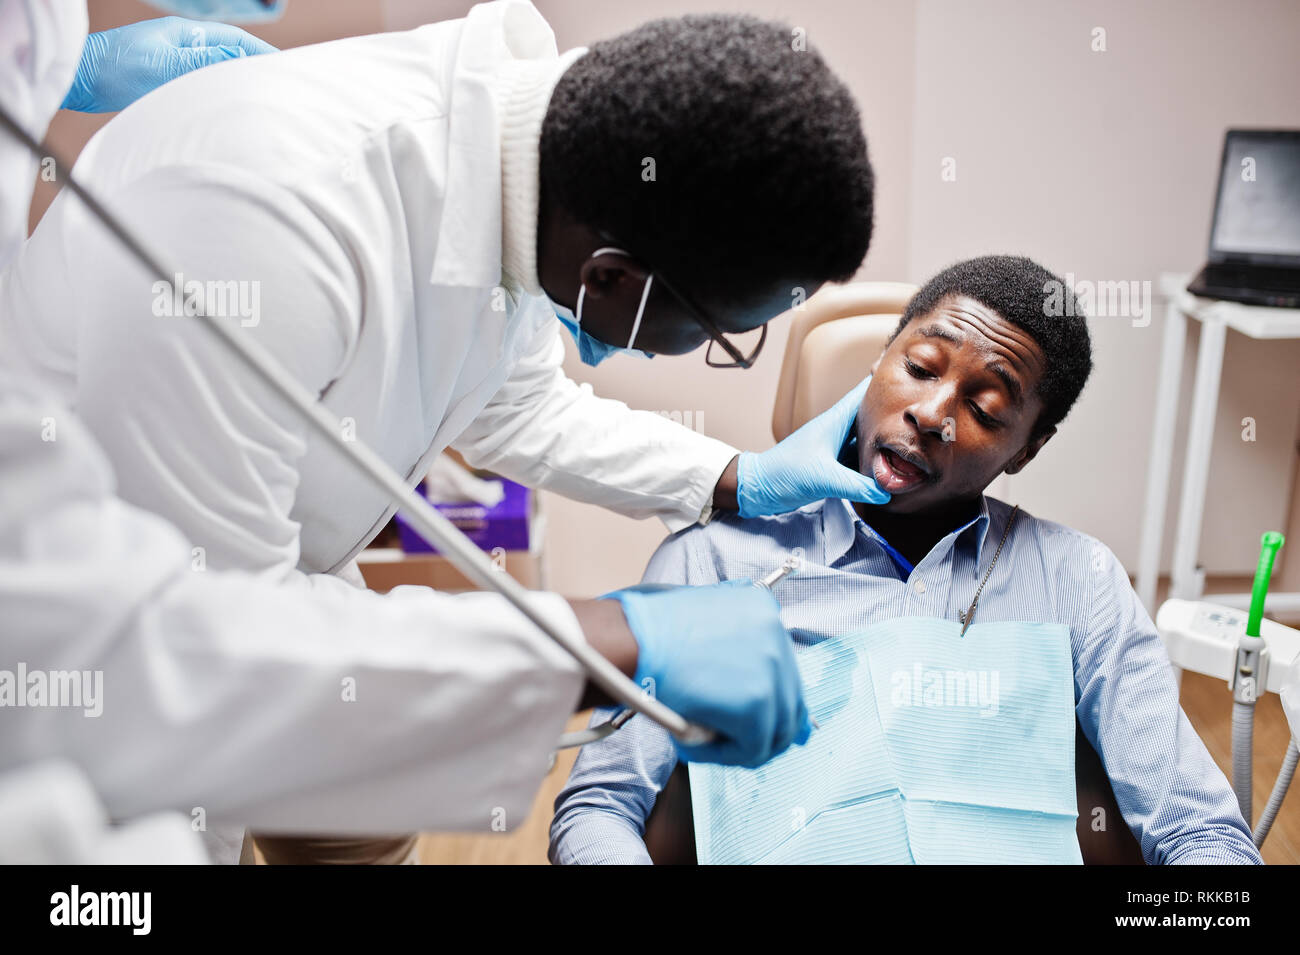 African American man Patient im Behandlungsstuhl. Zahnarzt und Arzt Praxis Konzept. Professionellen Zahnarzt seinen Patienten helfen bei der Zahnmedizin medica Stockfoto